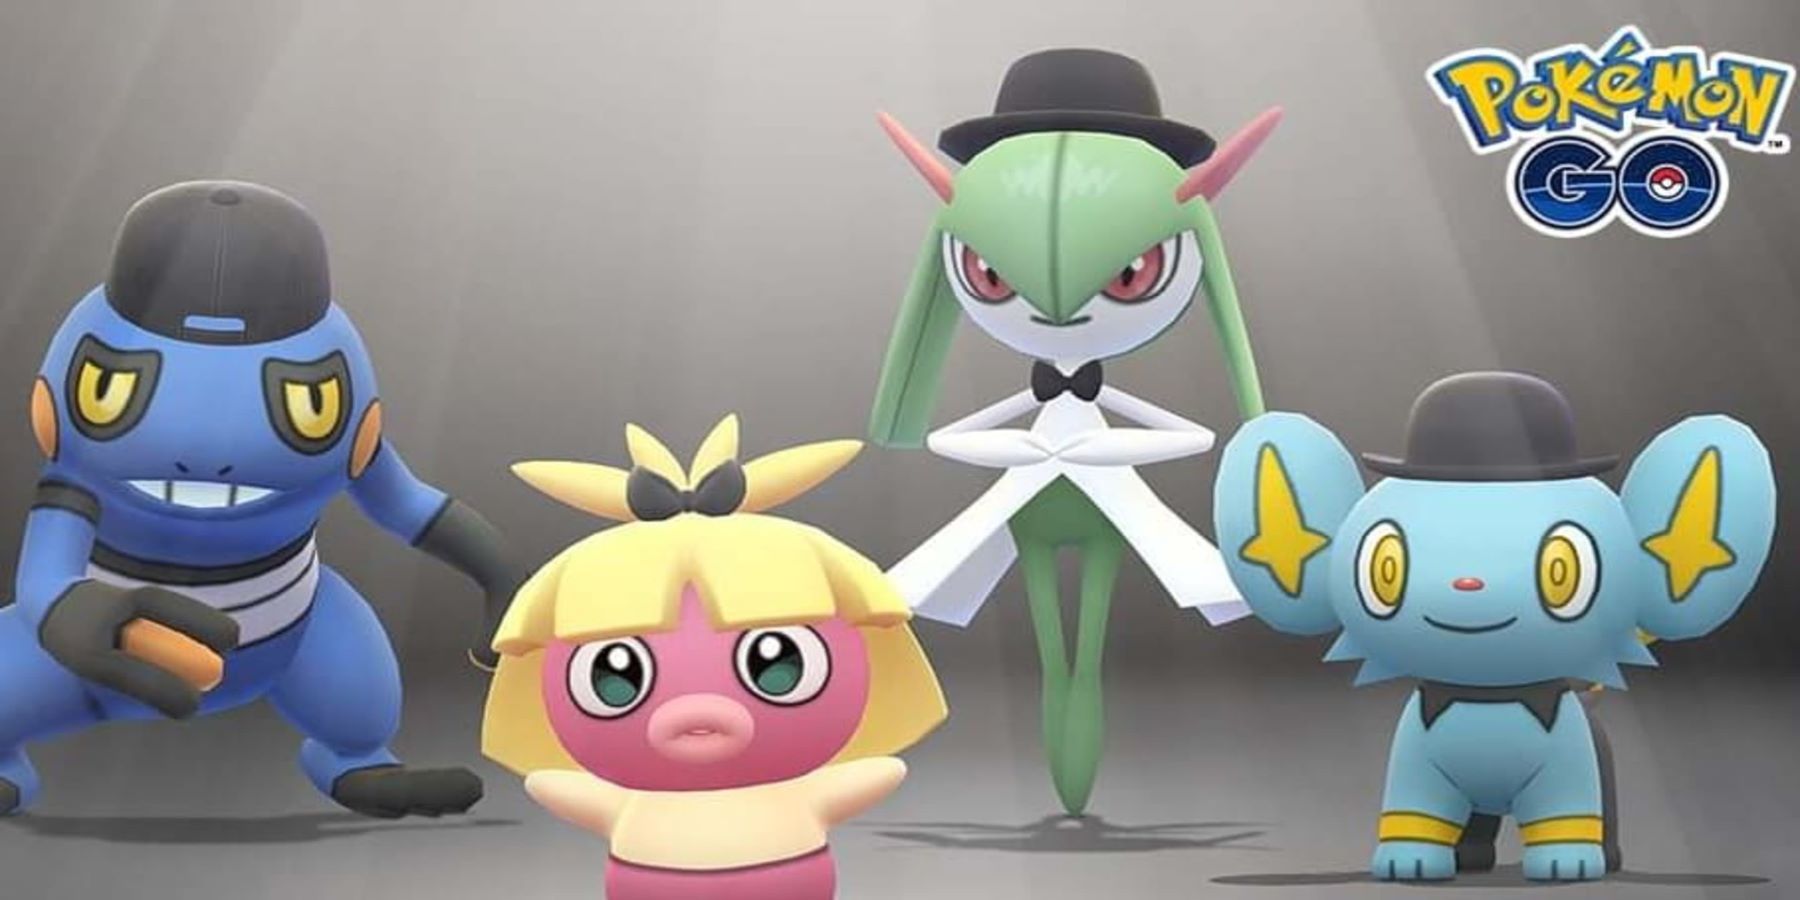 Событие Pokemon Go Fashion Week выделяет недостаток в настройке персонажей